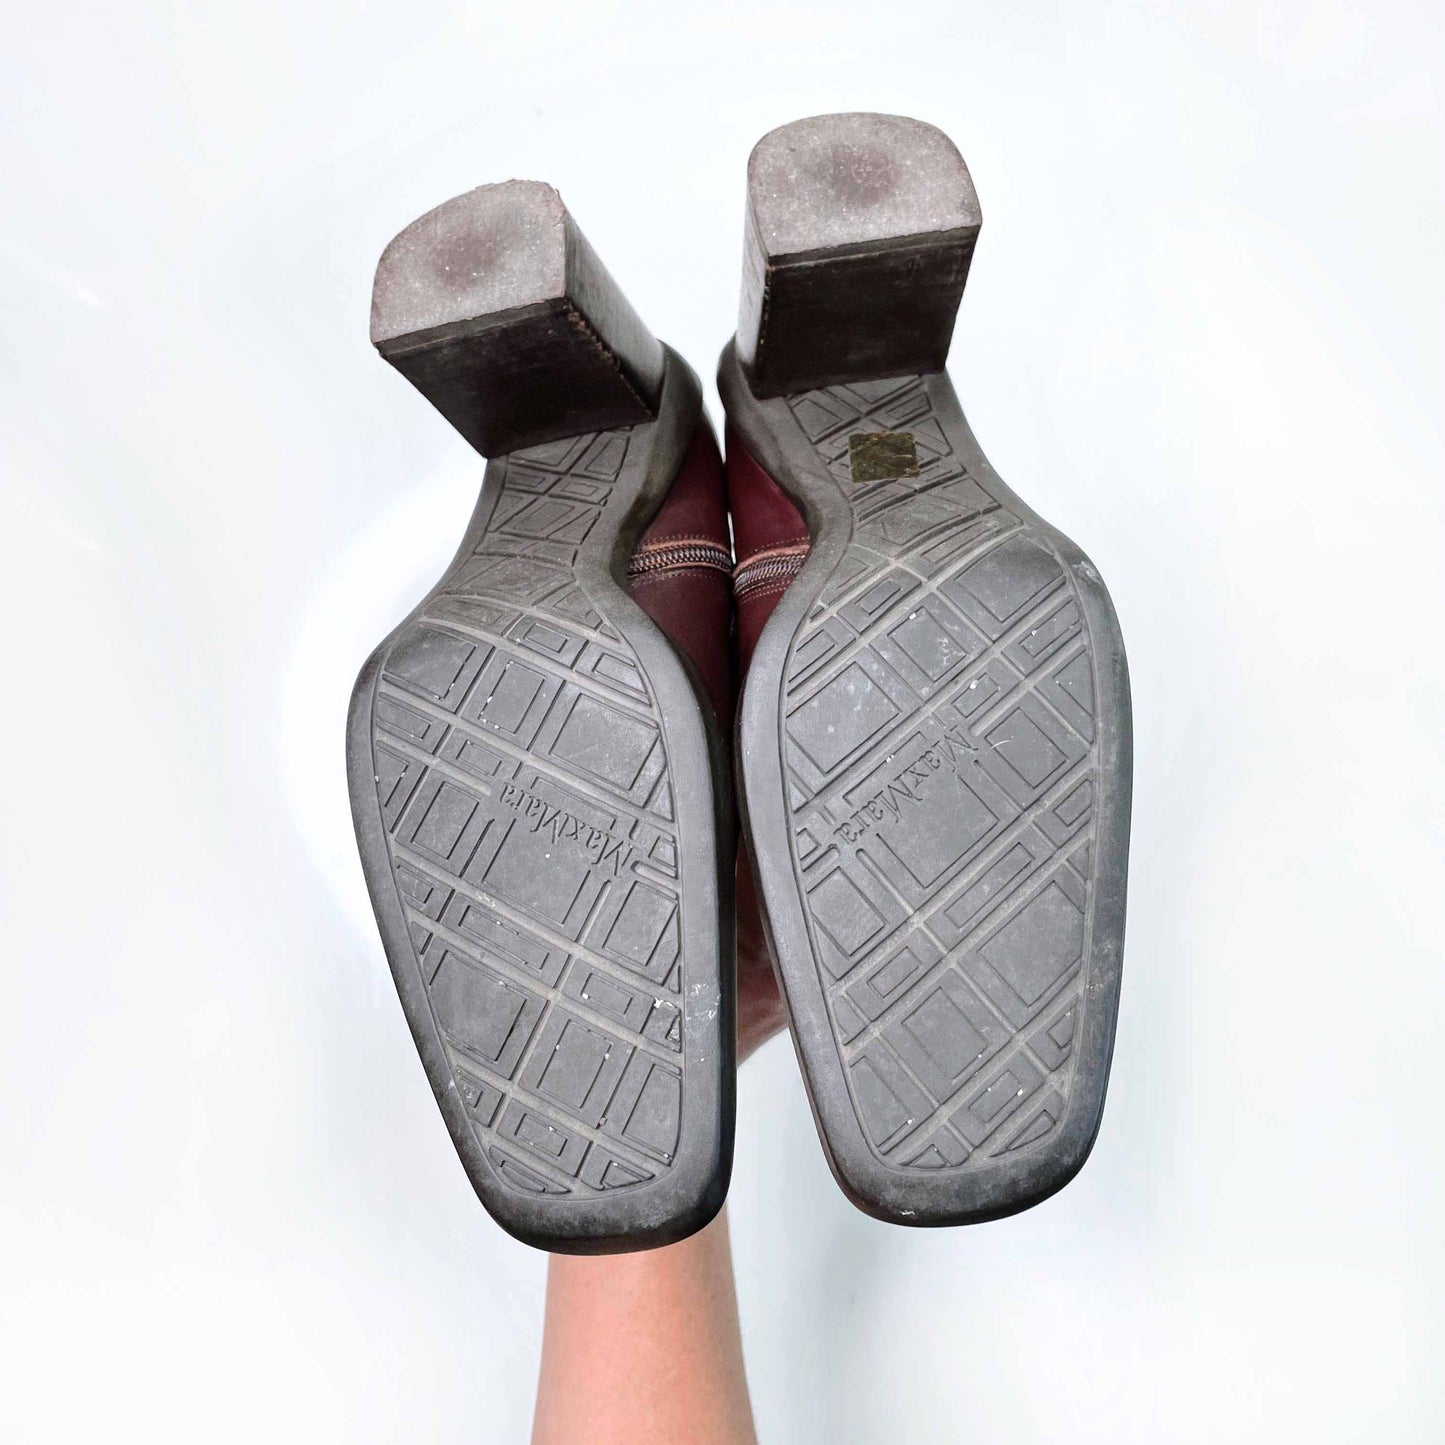 max mara leather square toe heeled boot - size 37